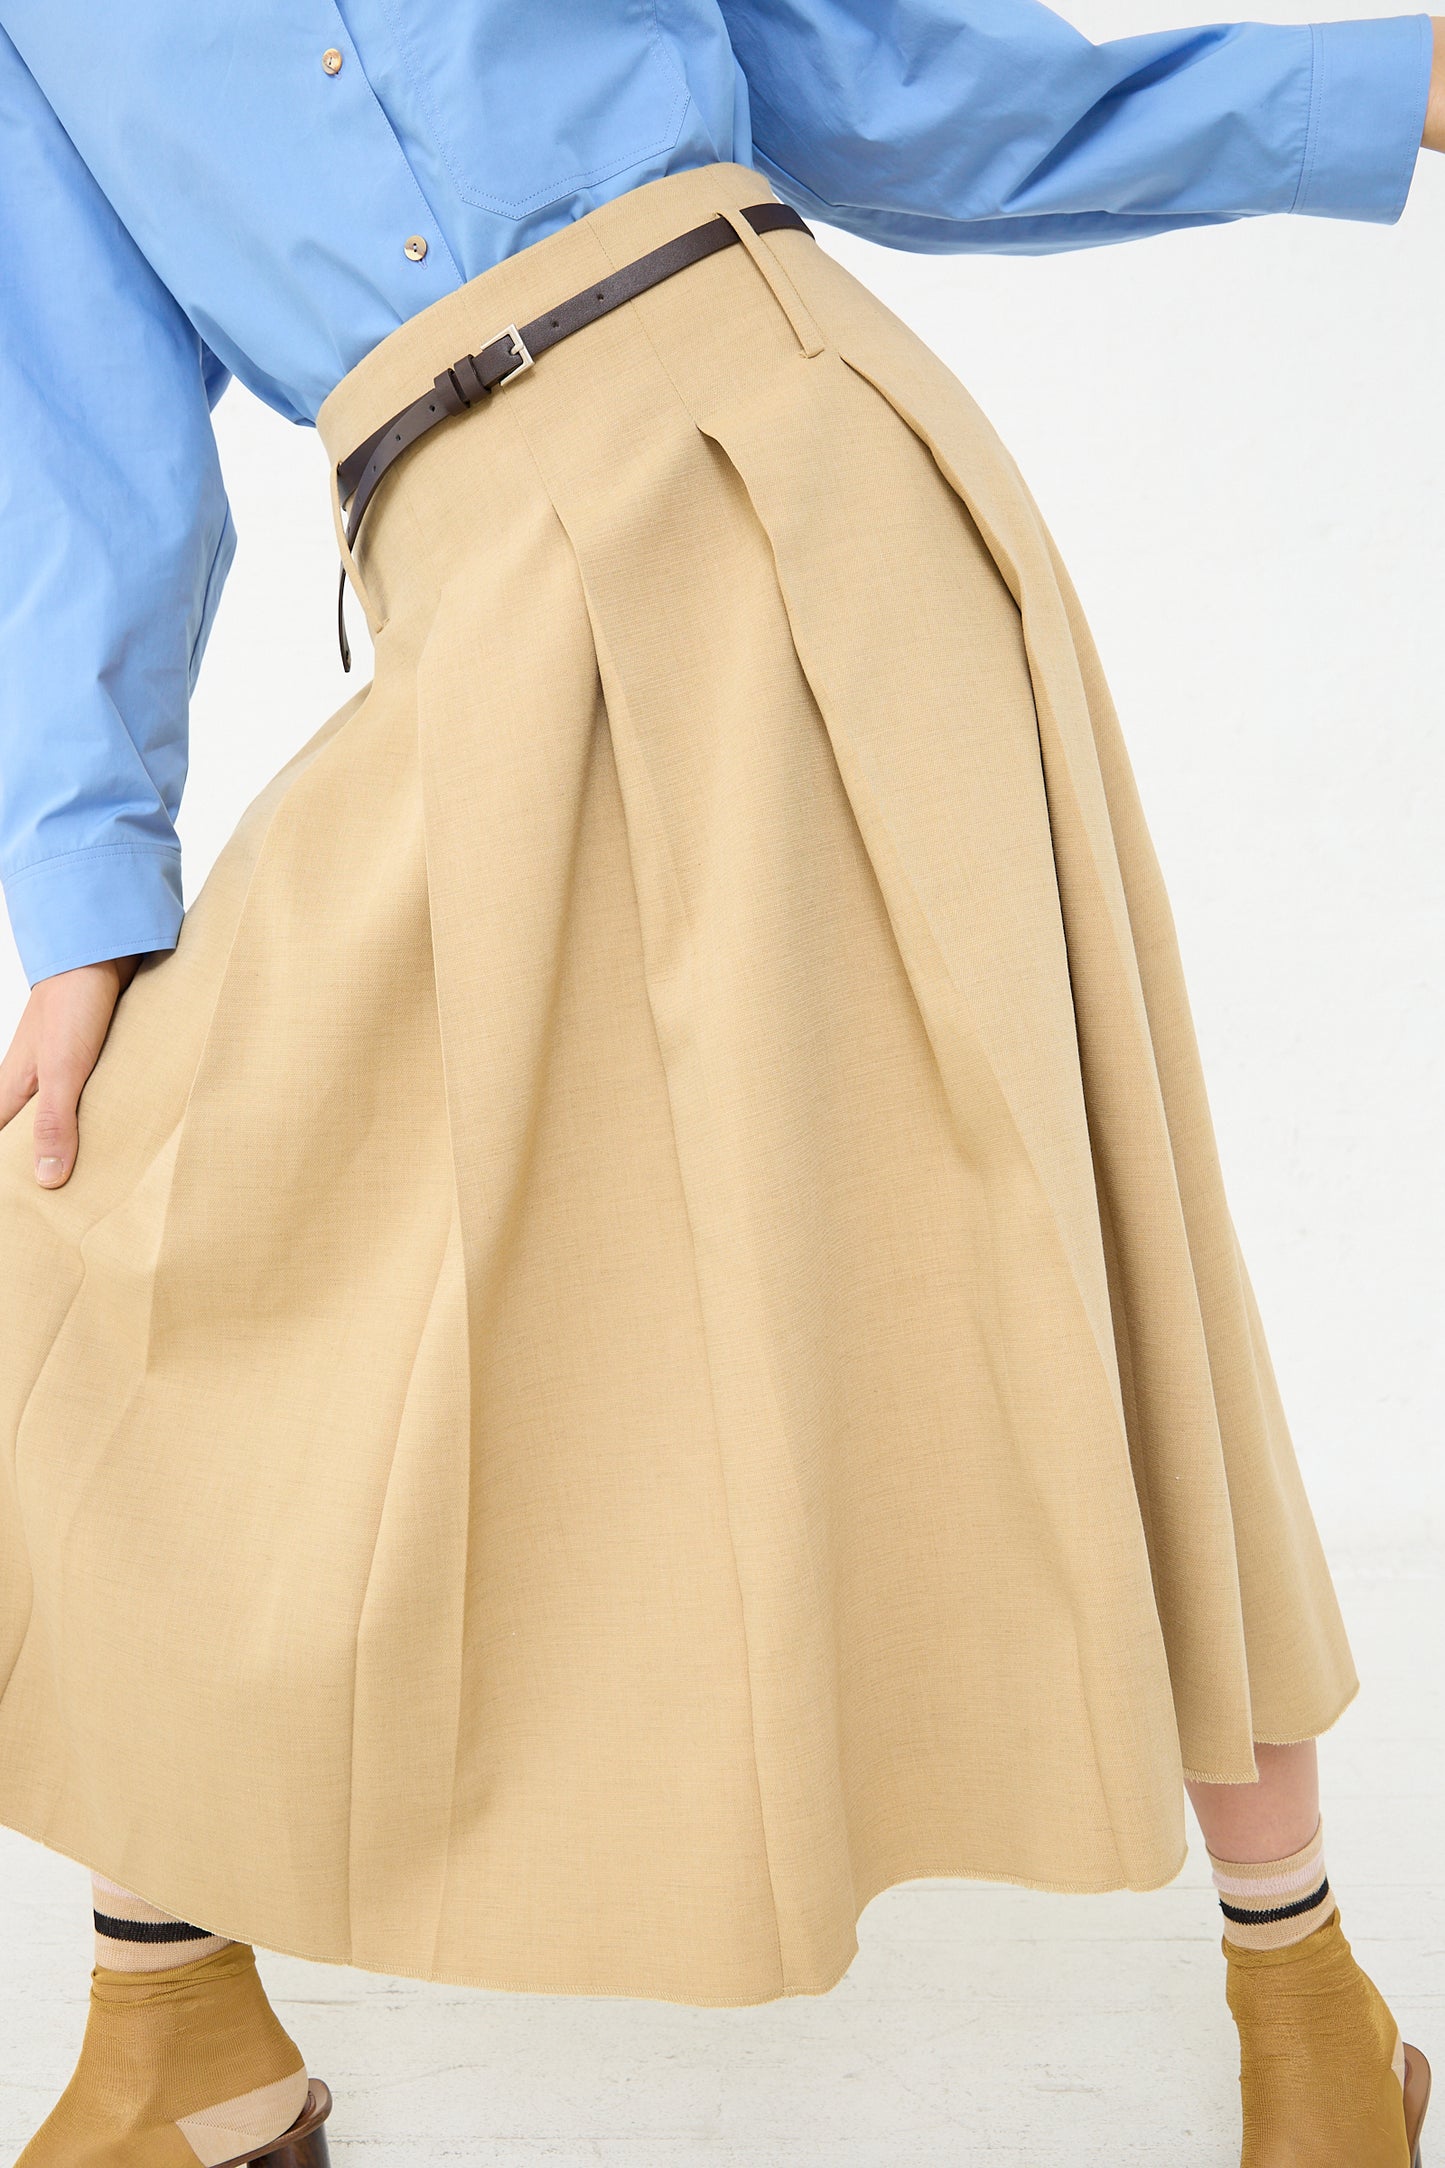 A woman wearing the Rejina Pyo Odette Skirt in Beige.